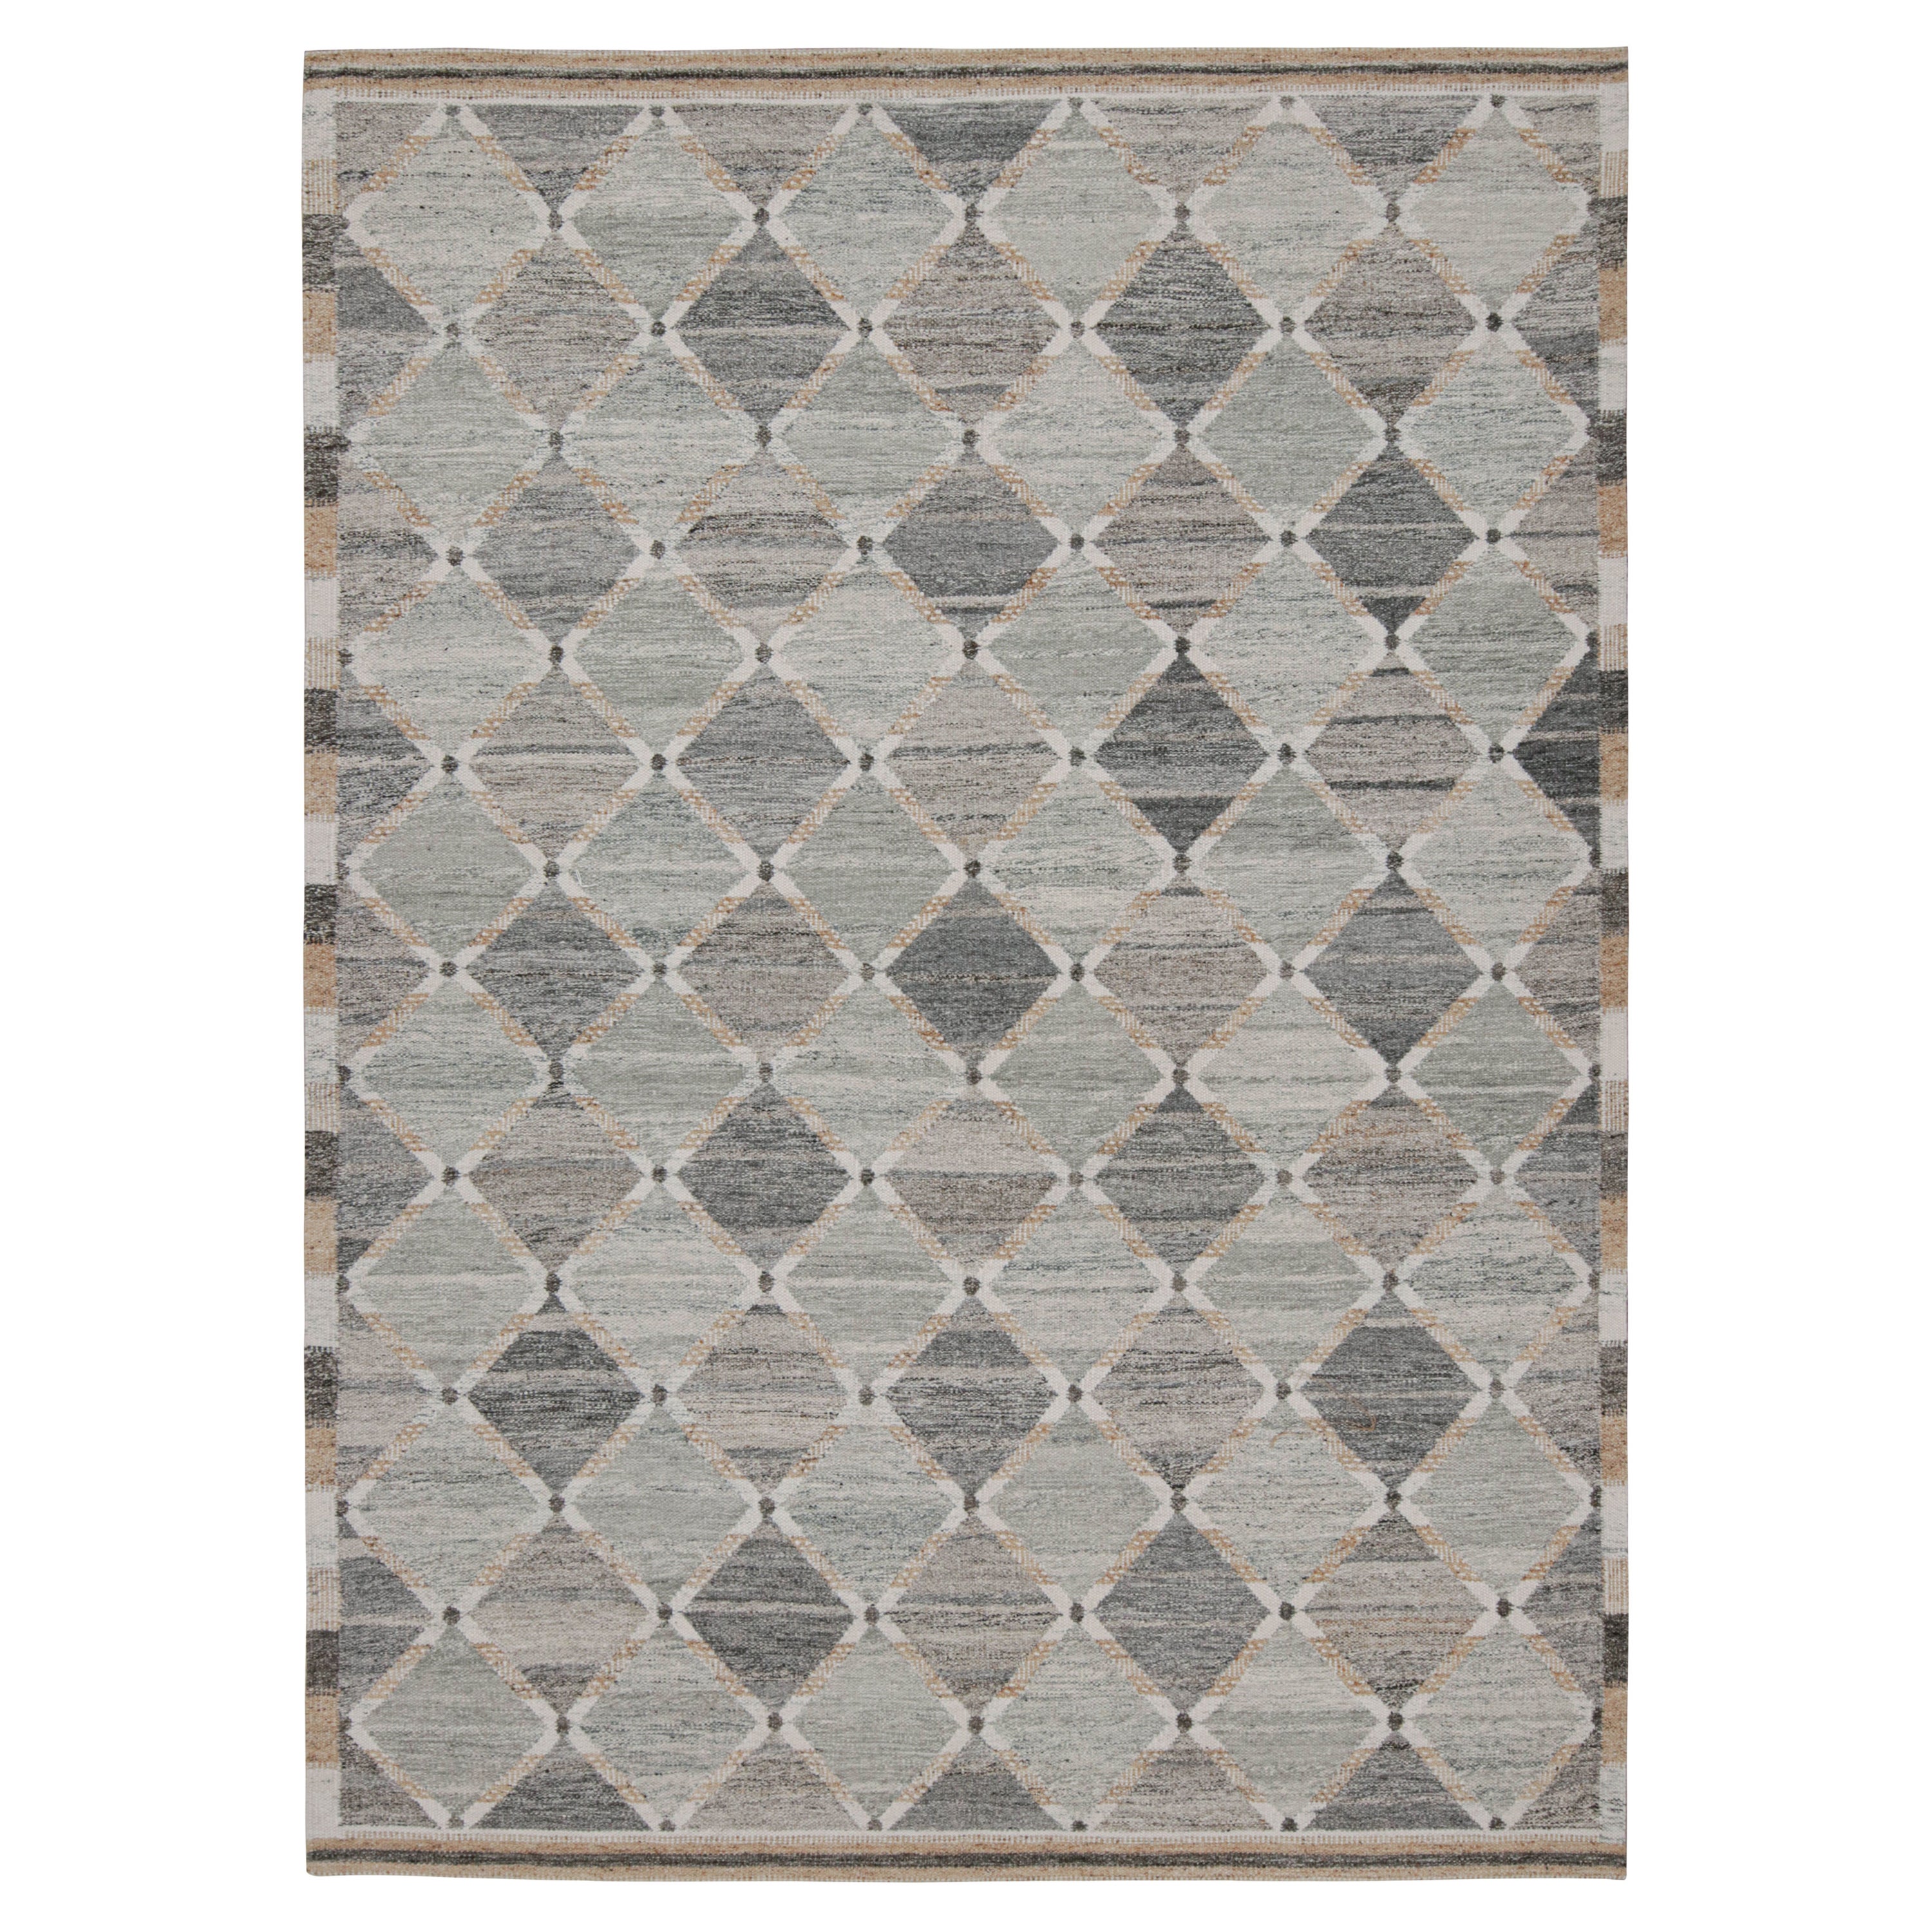 Rug & Kilim's Outdoor-Teppich im skandinavischen Stil mit geometrischen Mustern